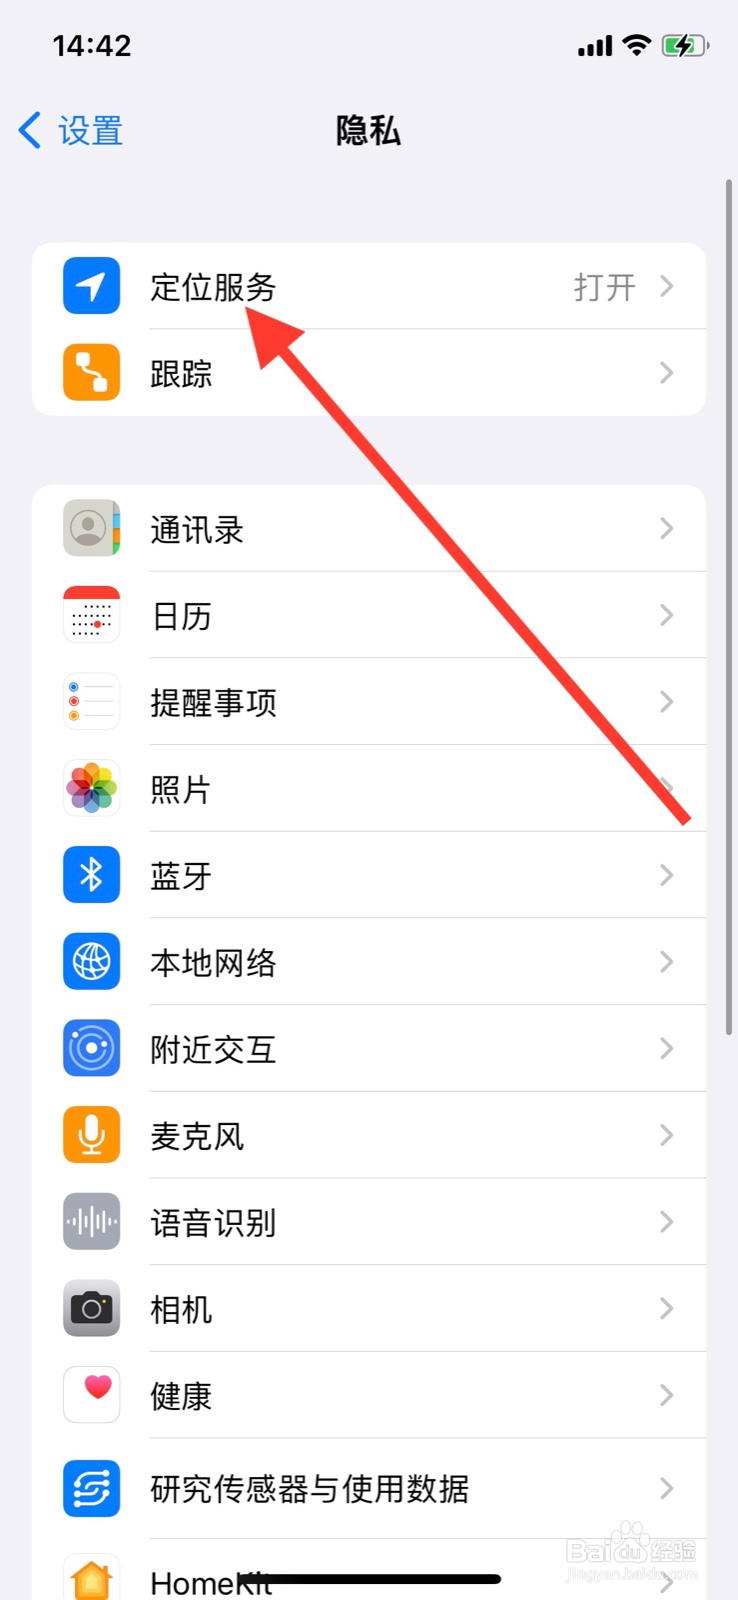 <b>iPhone同意使用菜鸟”app期间访问定位</b>